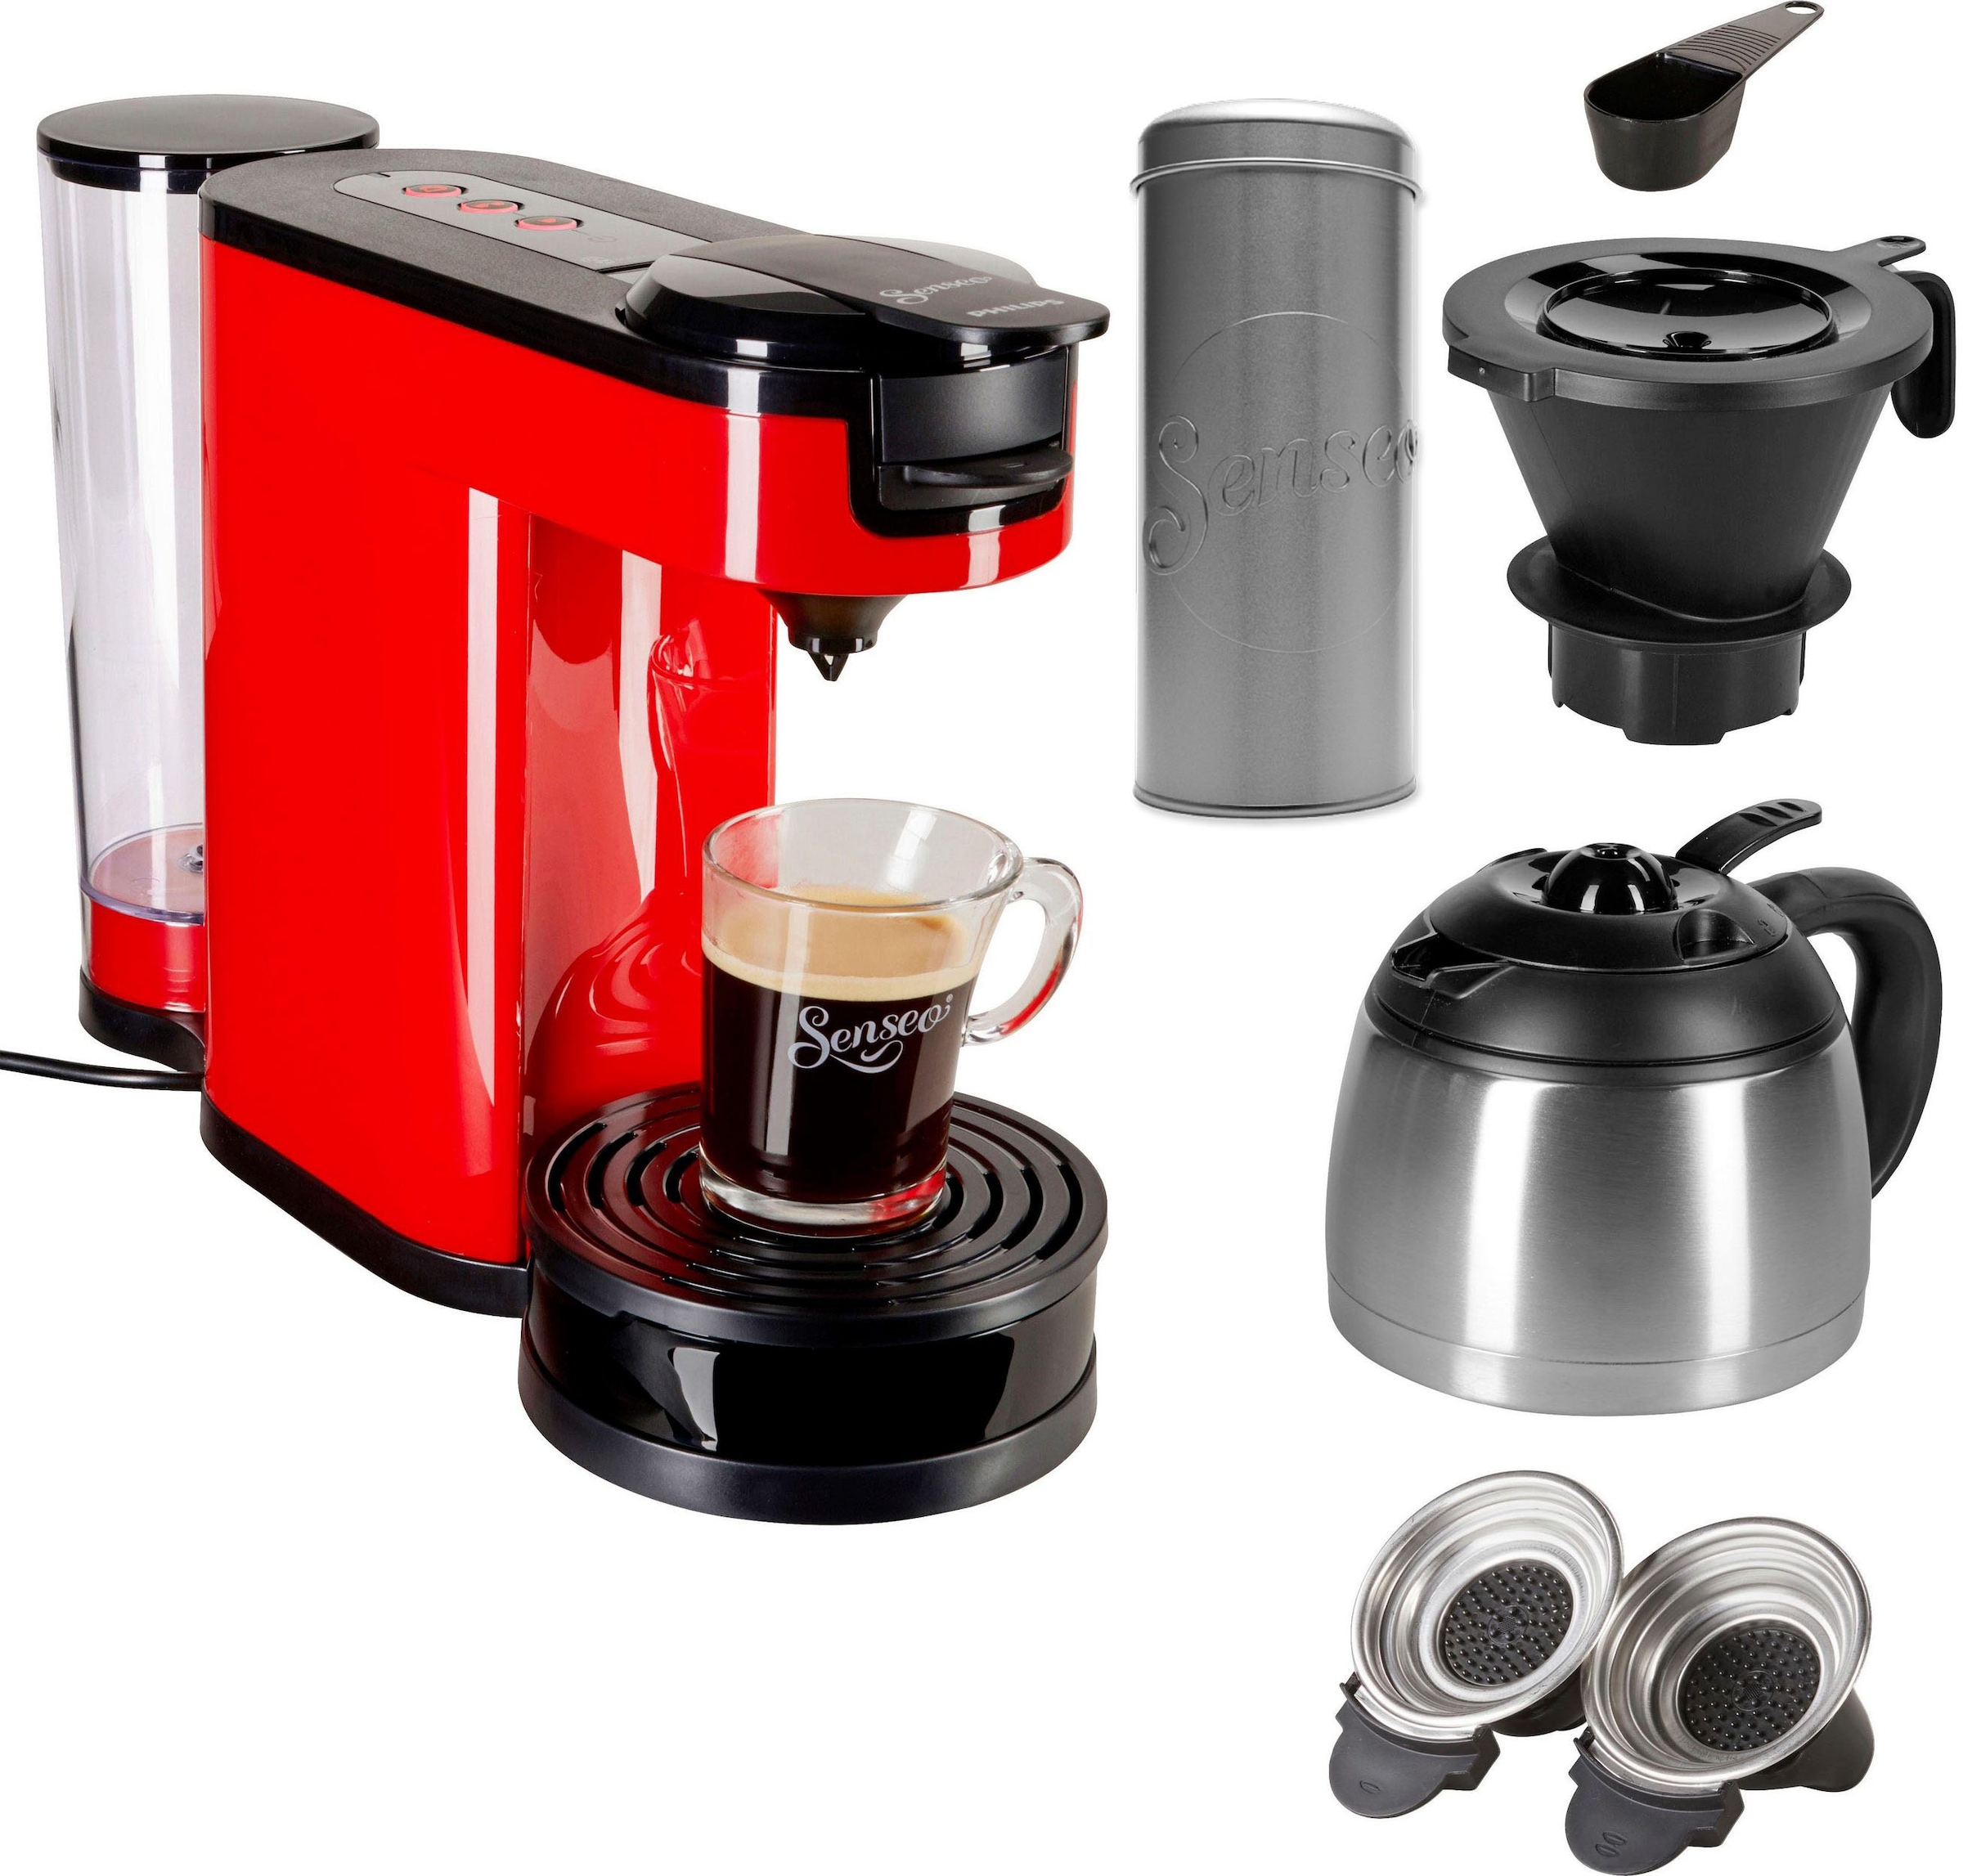 € jetzt Kaffeepaddose 9,90 Kaffeepadmaschine HD6592/80«, bestellen Philips von OTTO bei Papierfilter, UVP 1 »SENSEO® Kaffeekanne, Senseo im l Wert Switch